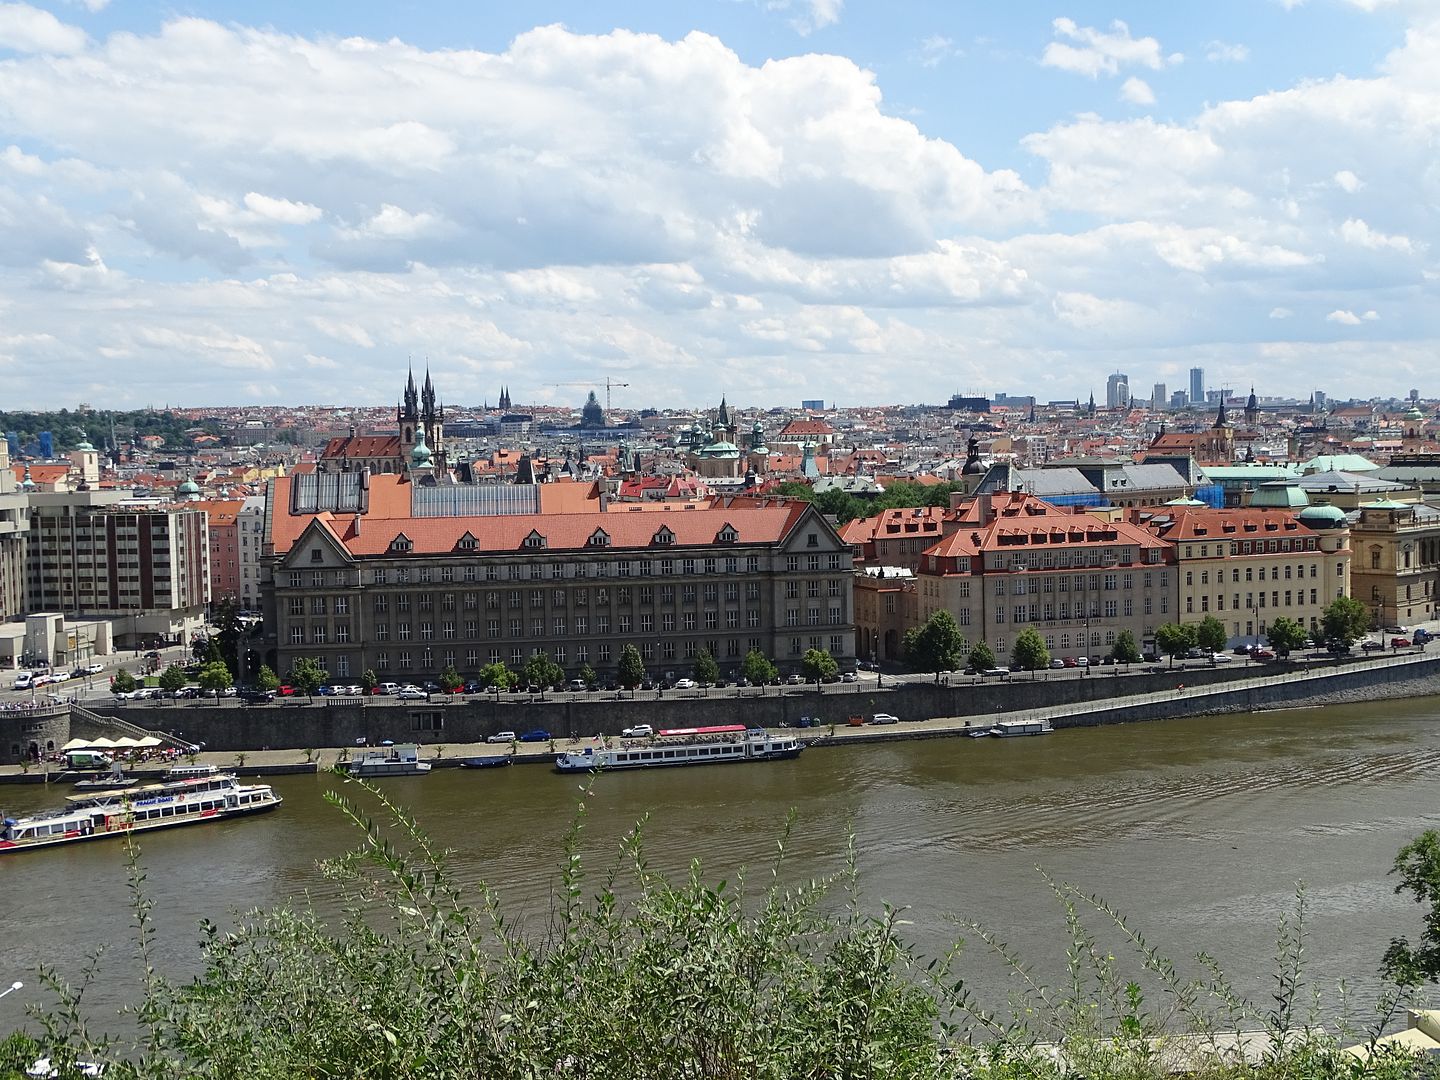 7 días en Praga con escursiones a Dresde (Alemania),Karlovy Vary y Terezin (E.C) - Blogs of Czech Republic - Día 3: Viernes 1 de Julio de 2016 (25)